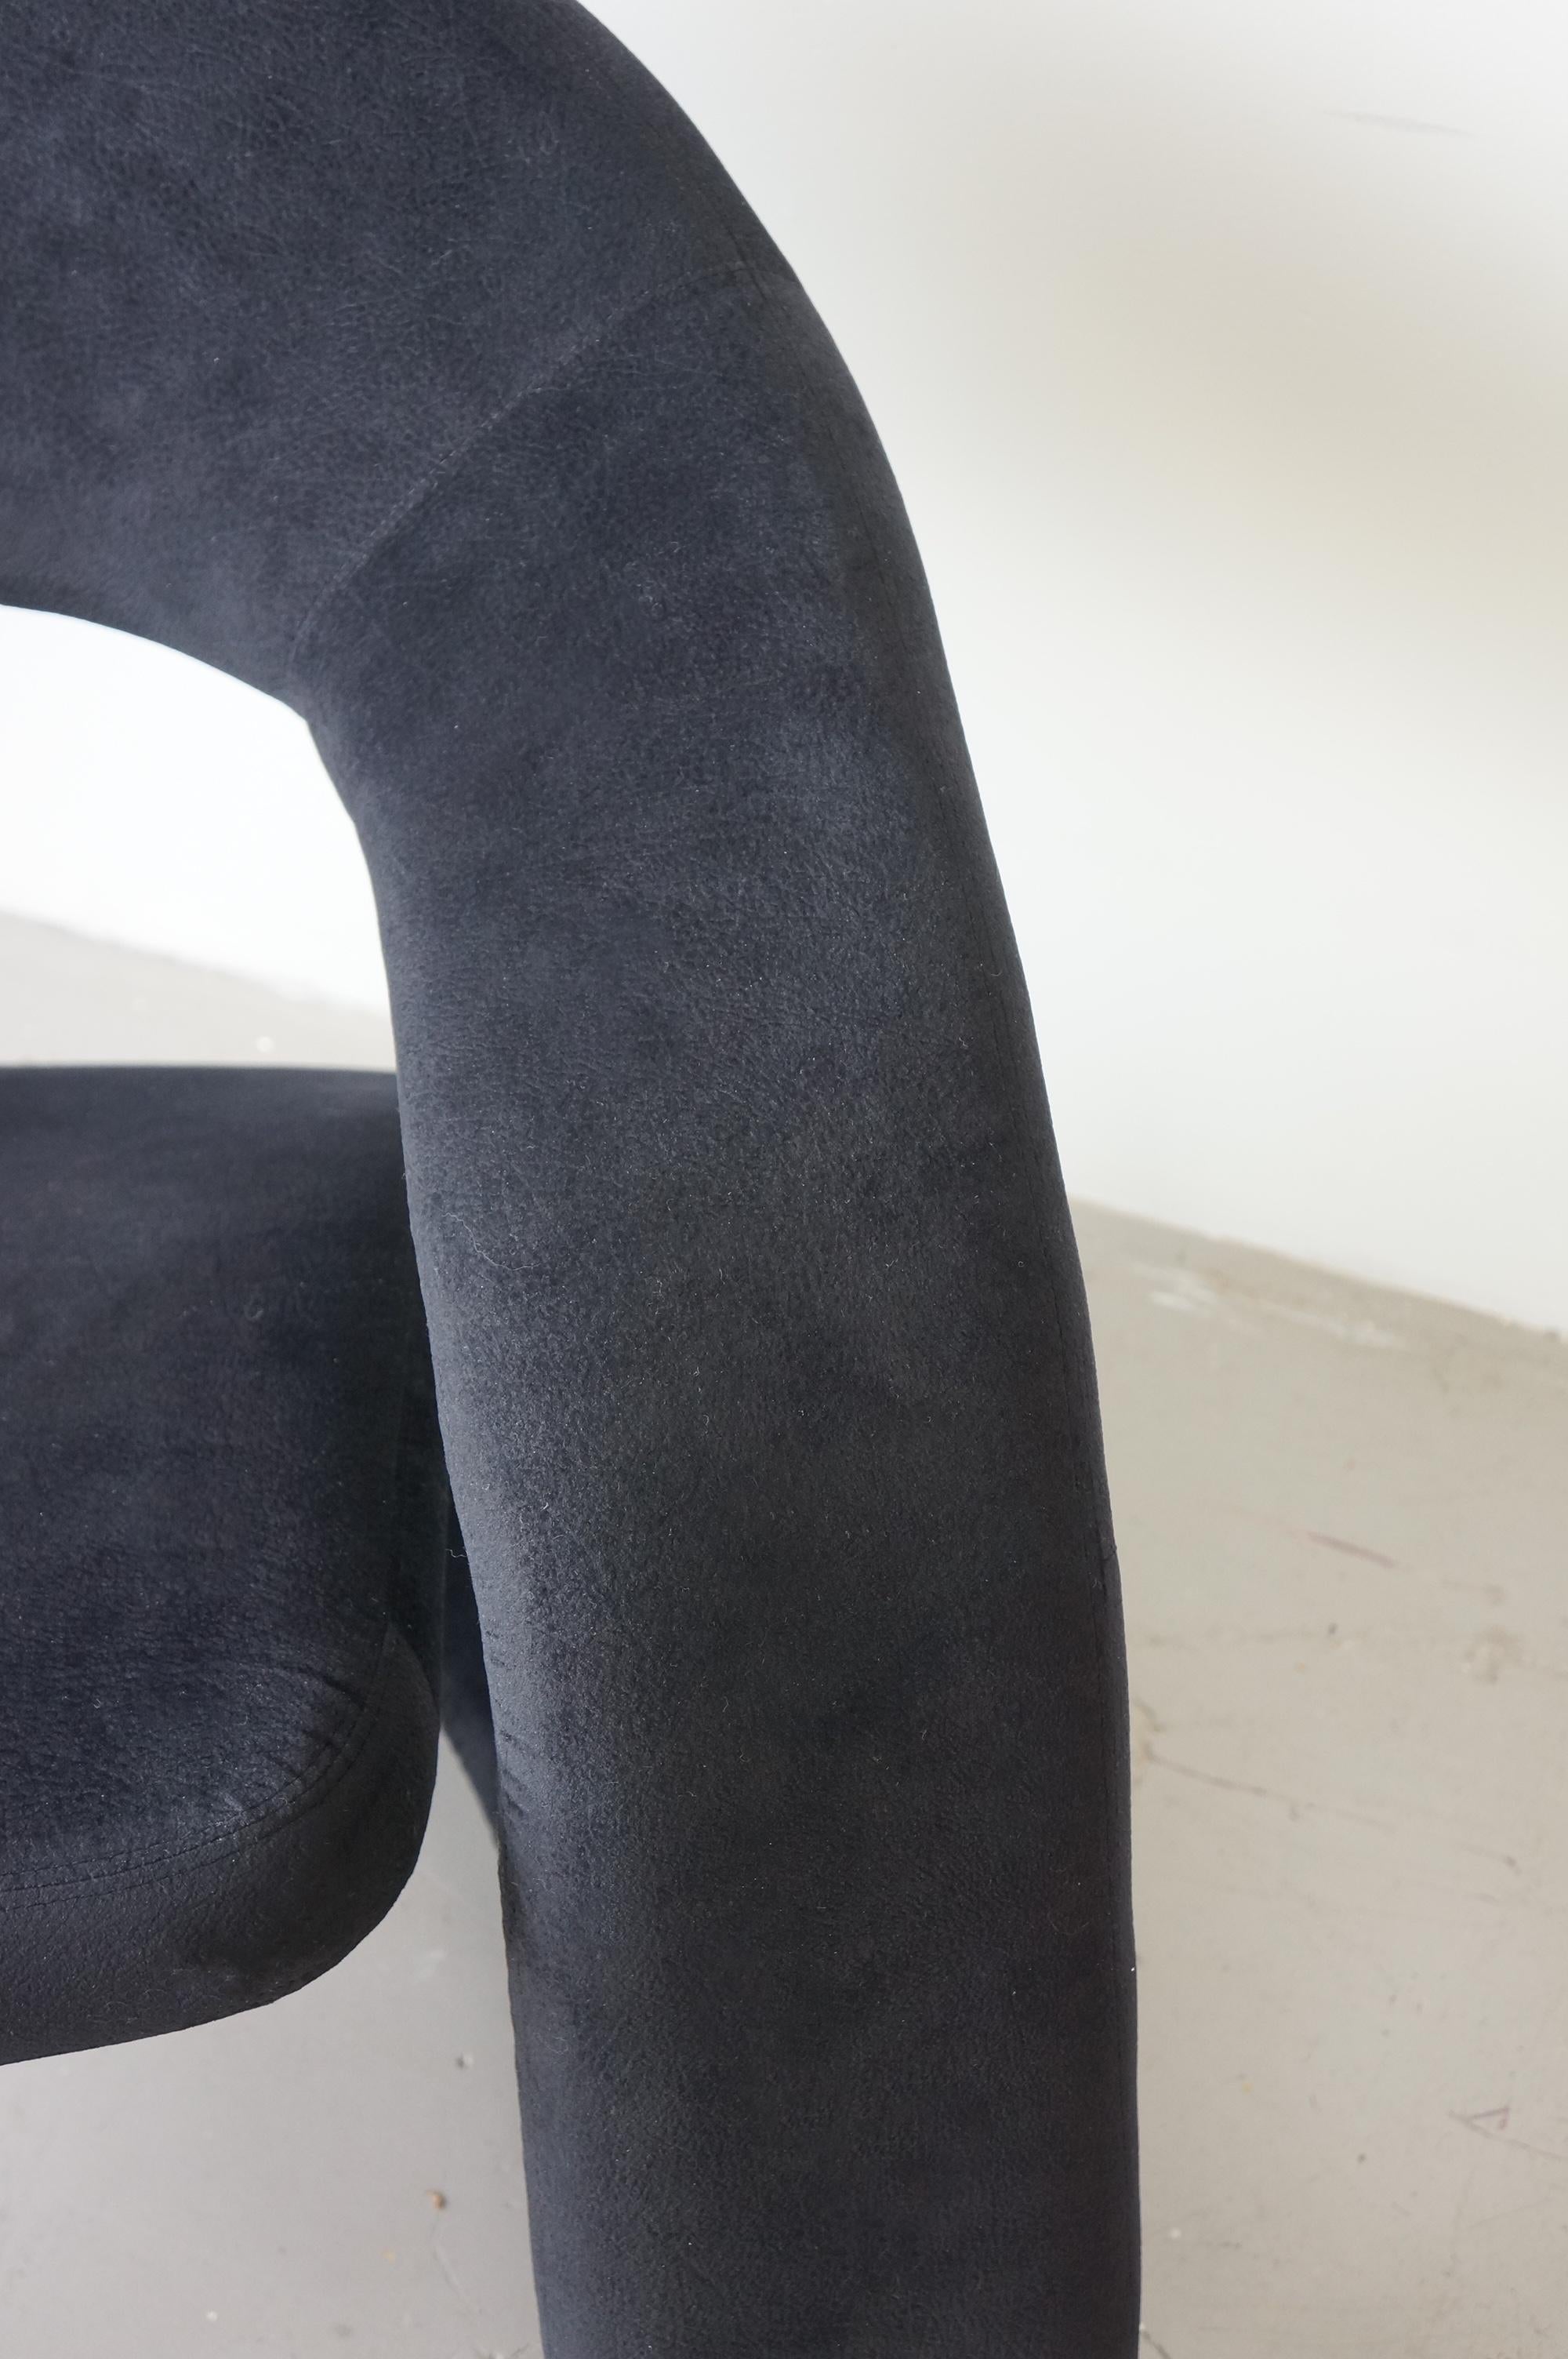 Ultrasuede Sculptural Jaymar chairs 